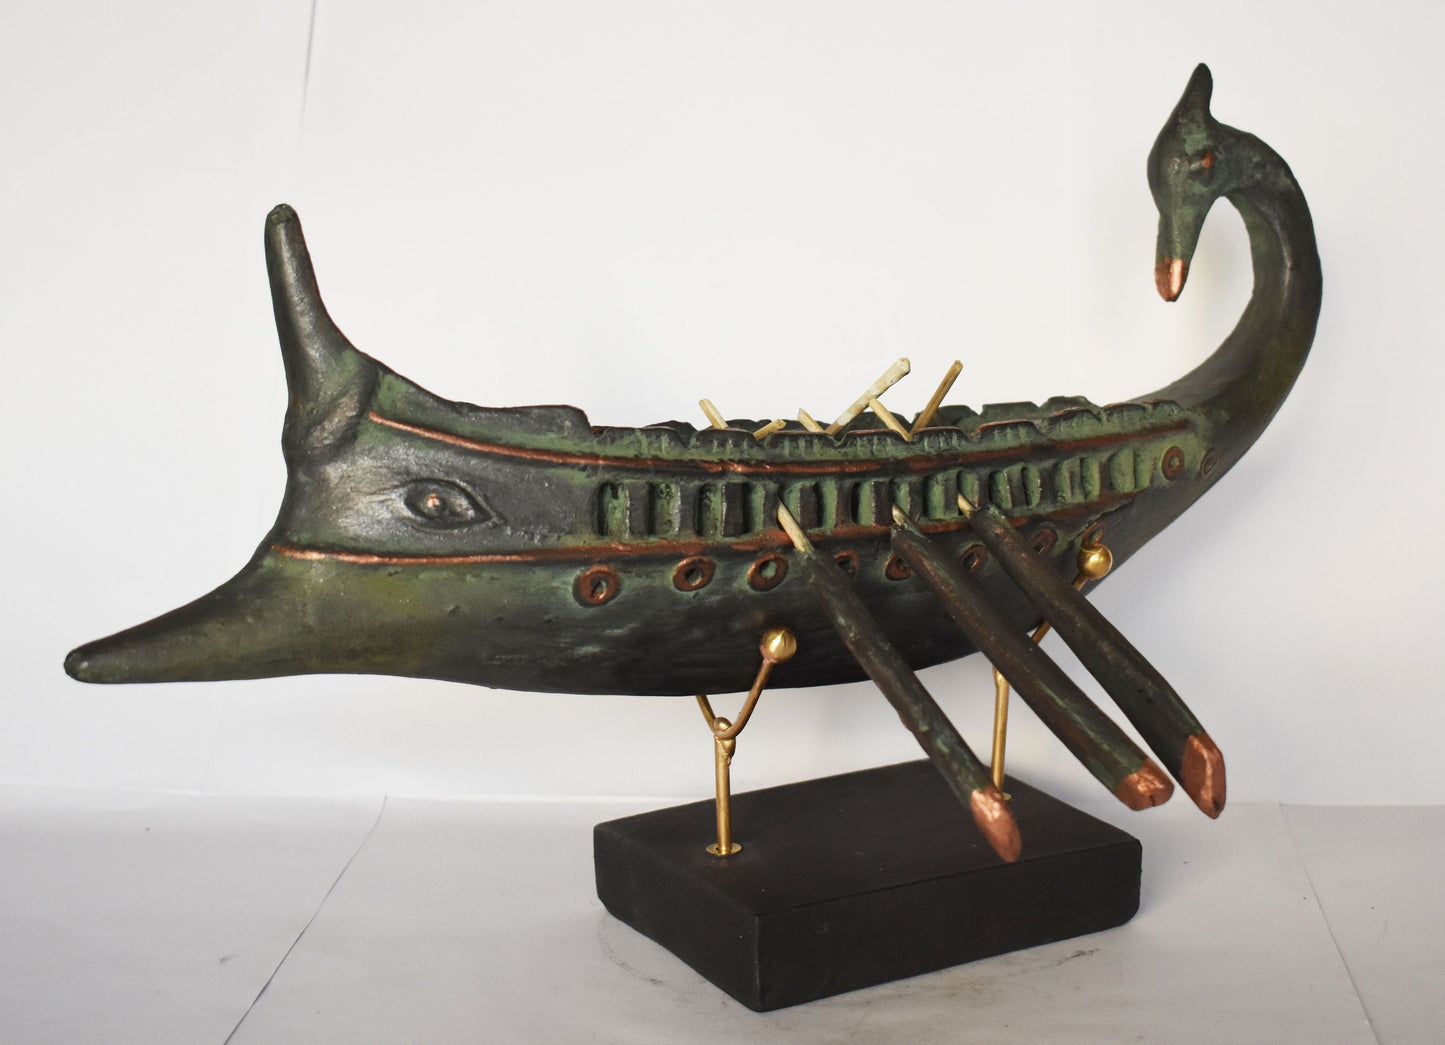 Ancient Greek Athenian Ship  - Trireme -  Battle of Salamis -  480 BC - Museum Reproduction - Bronze Colour Effect - Ceramic Artifact